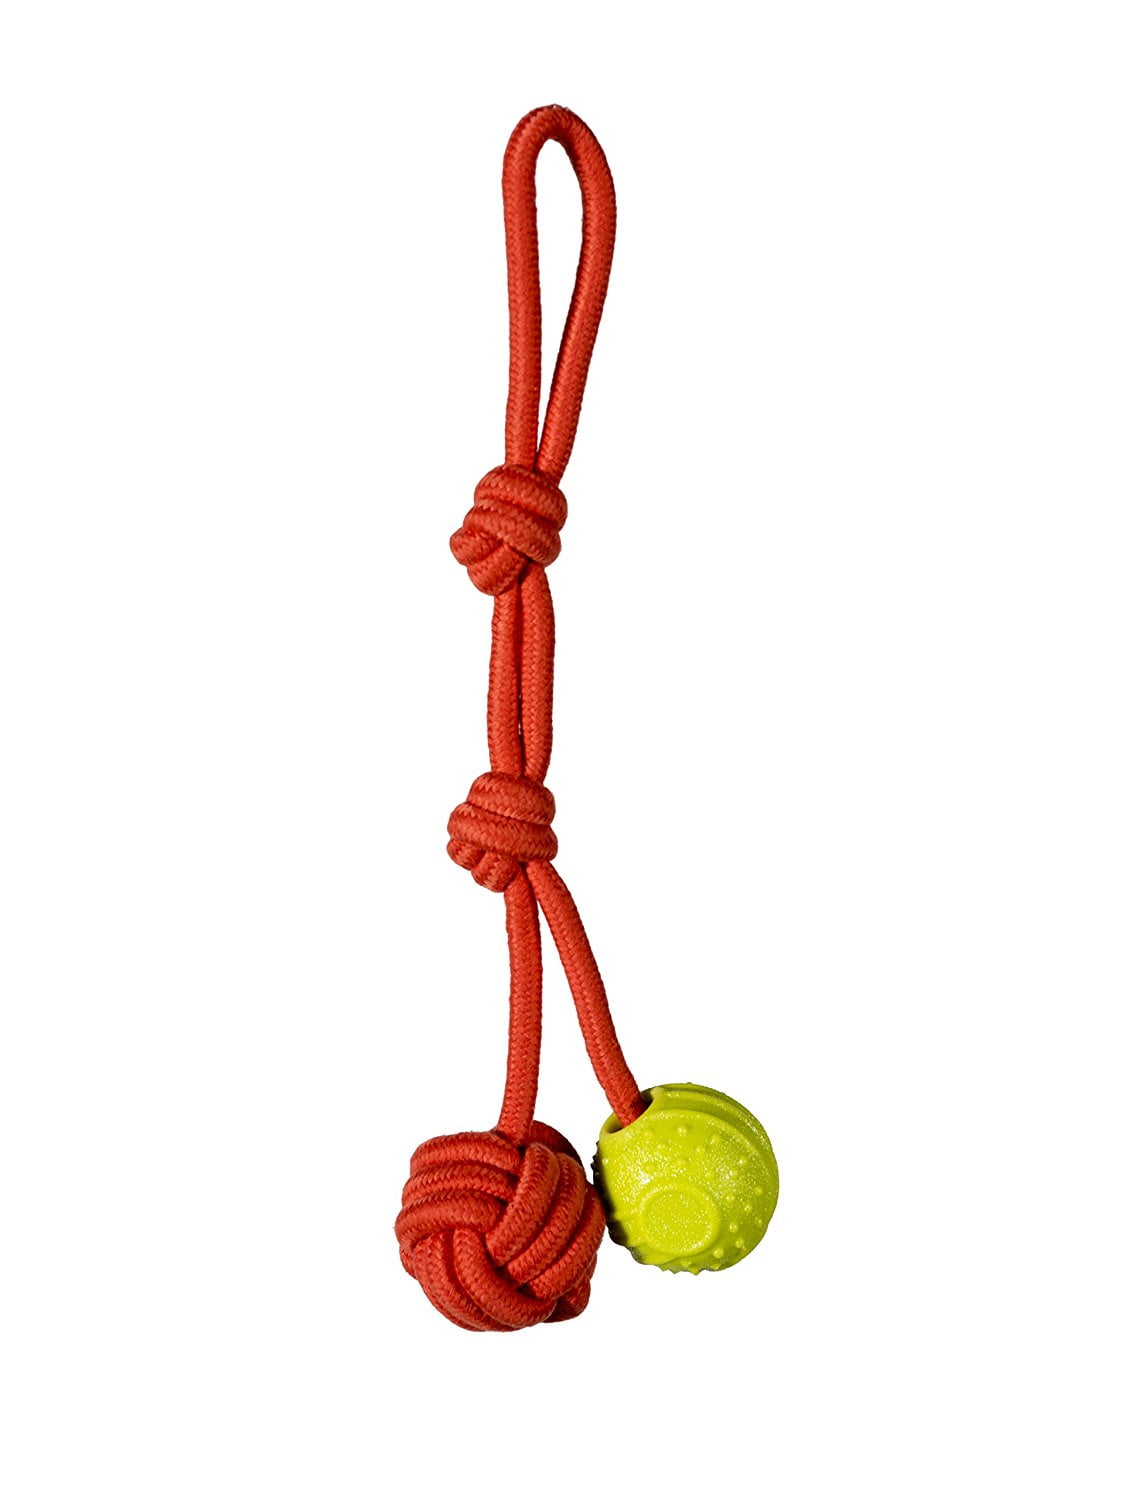 Chase 'n Chomp Oscar Fetch-Tug Rope Dog Toy with Rope & TPR Ball, Small - Walmart.com - Walmart.com